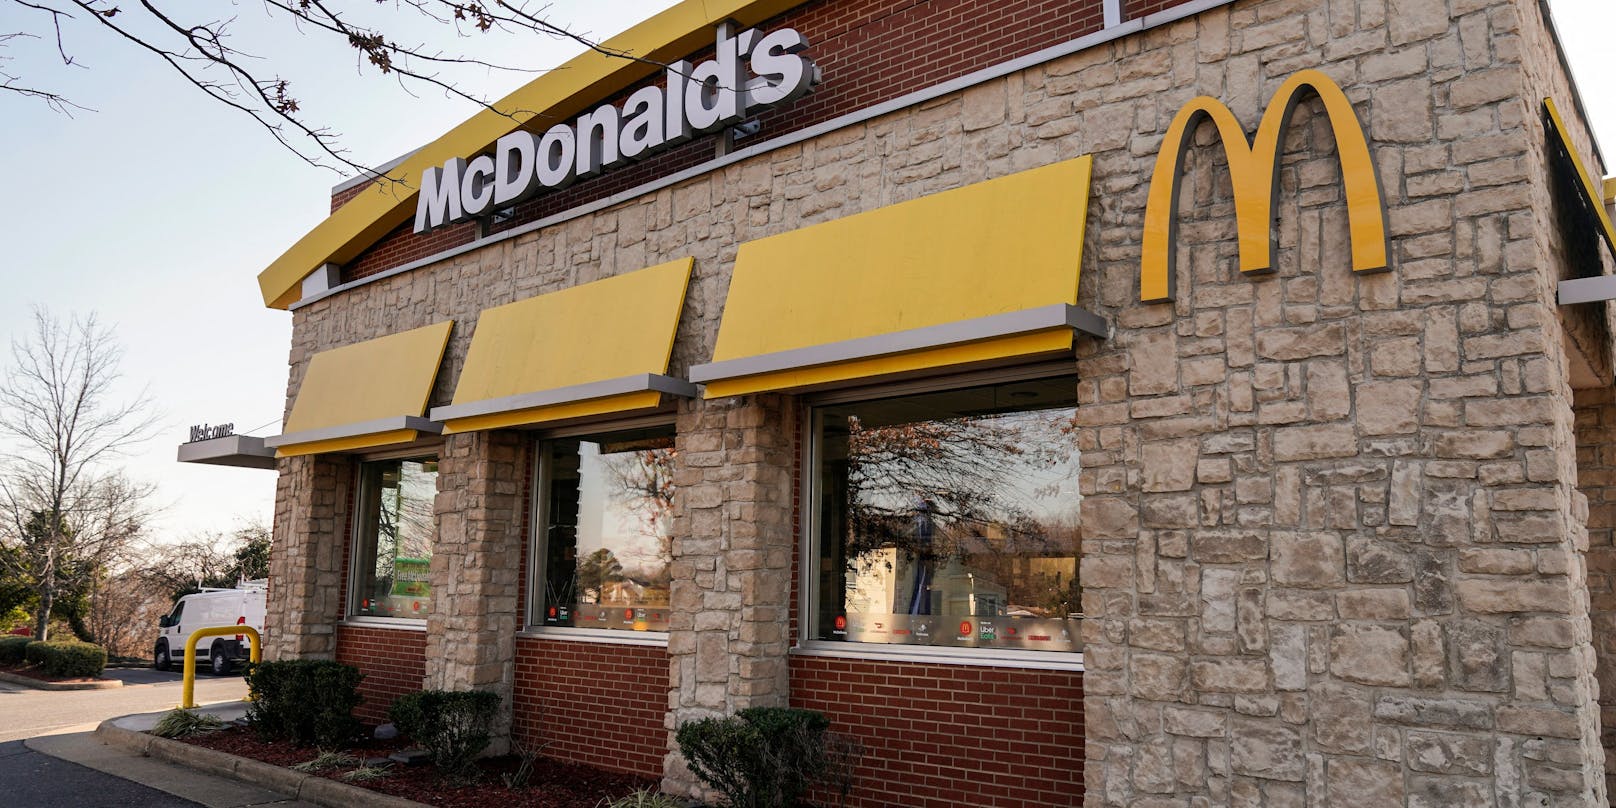 Der Vorfall ereignete sich im Stadtteil Midvale in Salt Lake City vor einem McDonald's Restaurant. (Symbolbild)